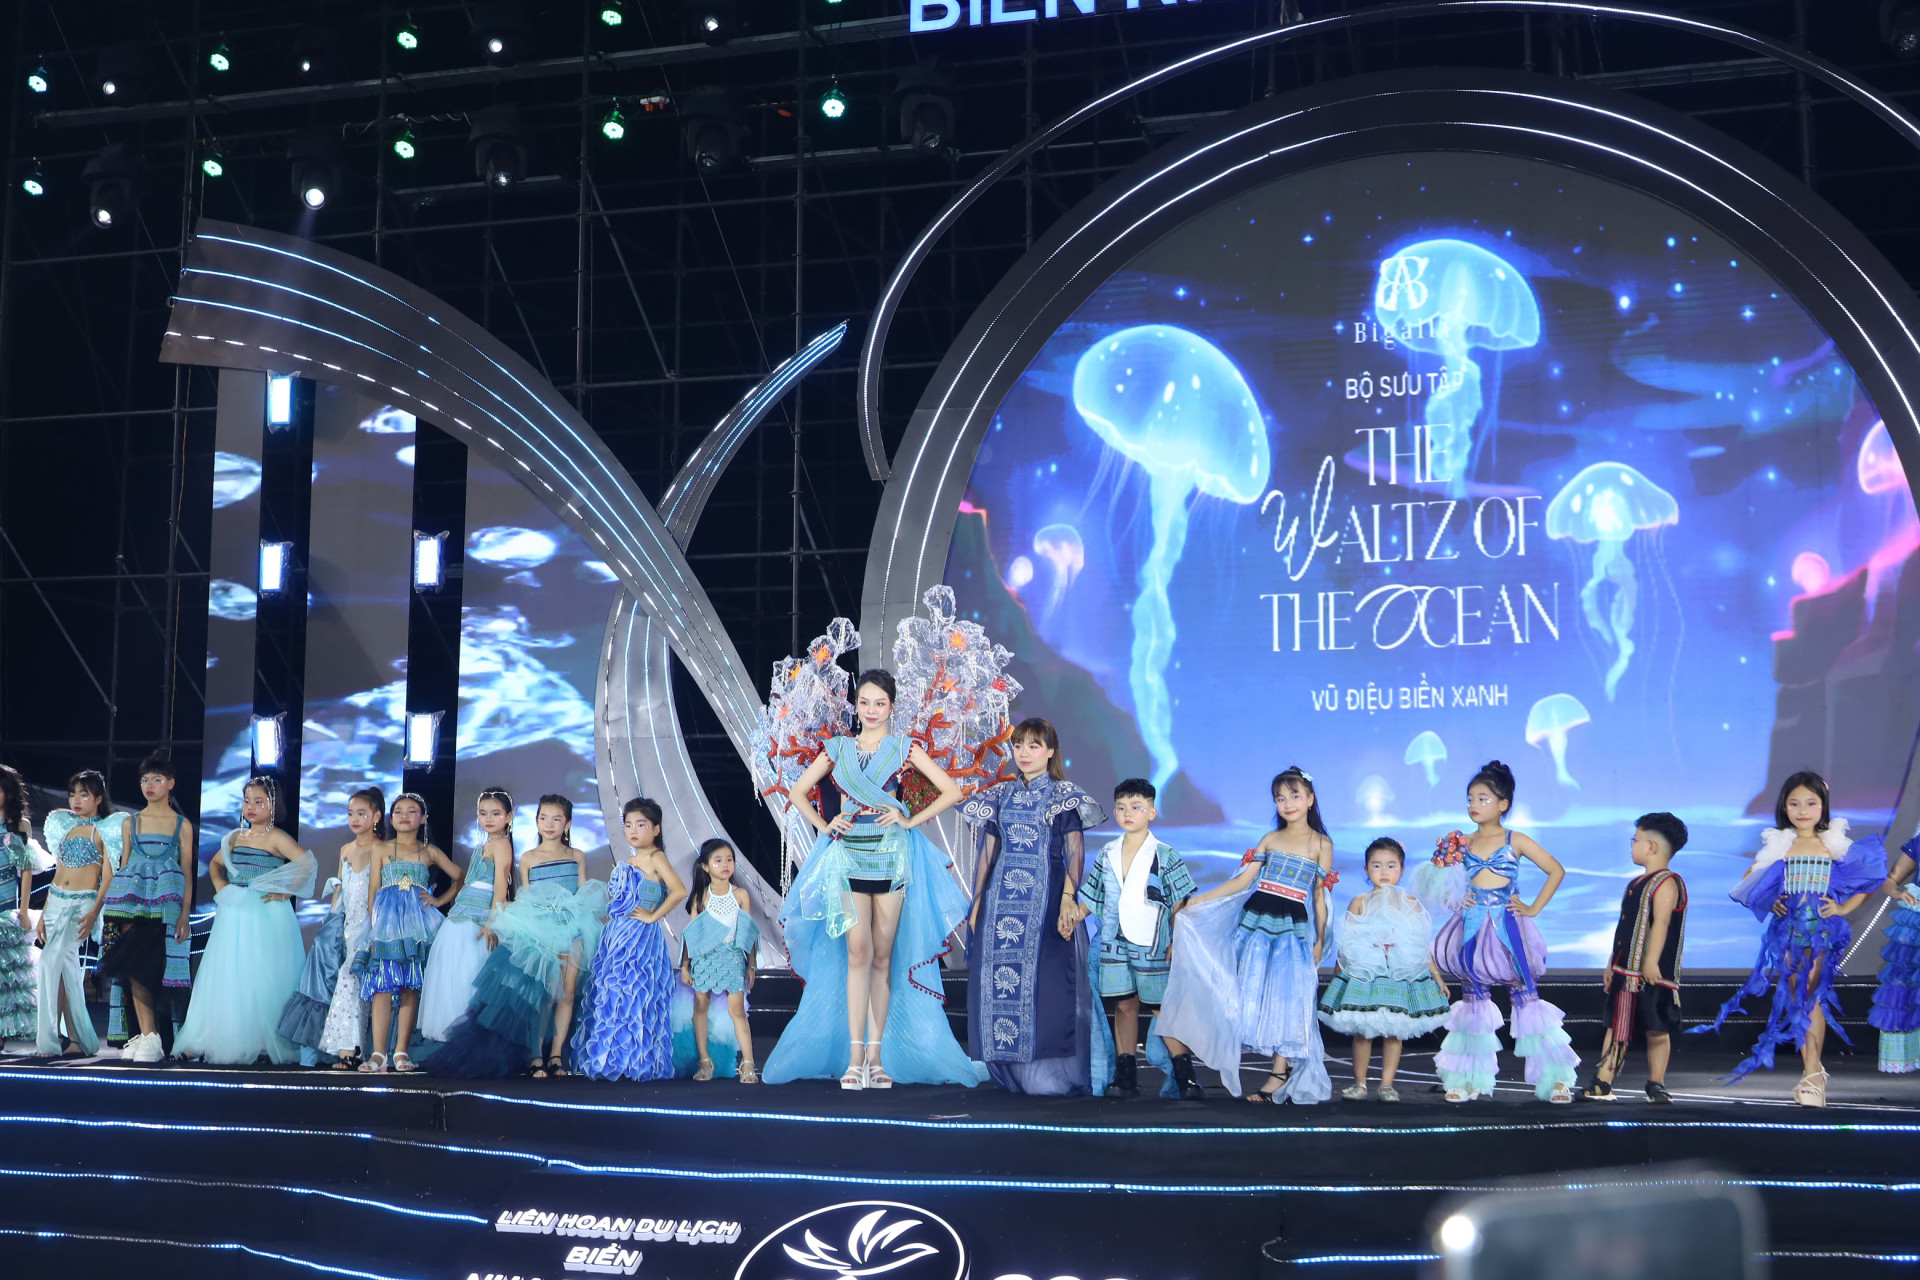 Hoa hậu Thanh Thủy và các người mẫu nhí trong bộ sưu tập thổ cẩm Vũ điệu biển xanh của thương hiệu Bigally.